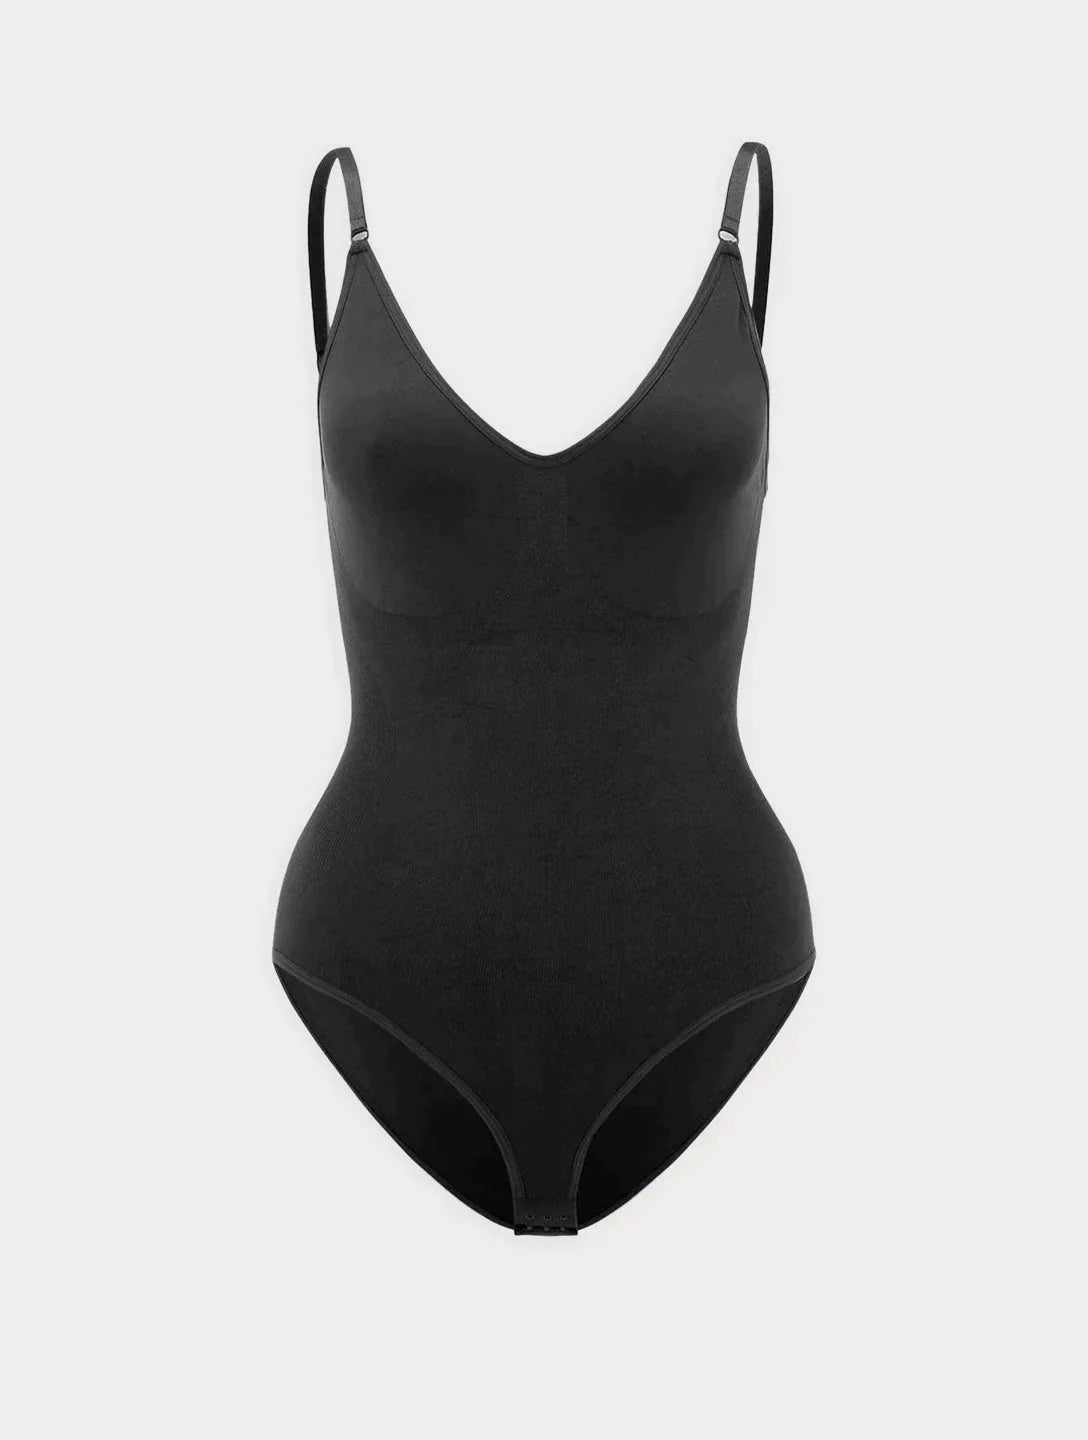 Snatched Bodysuit – She Paulie Boutique